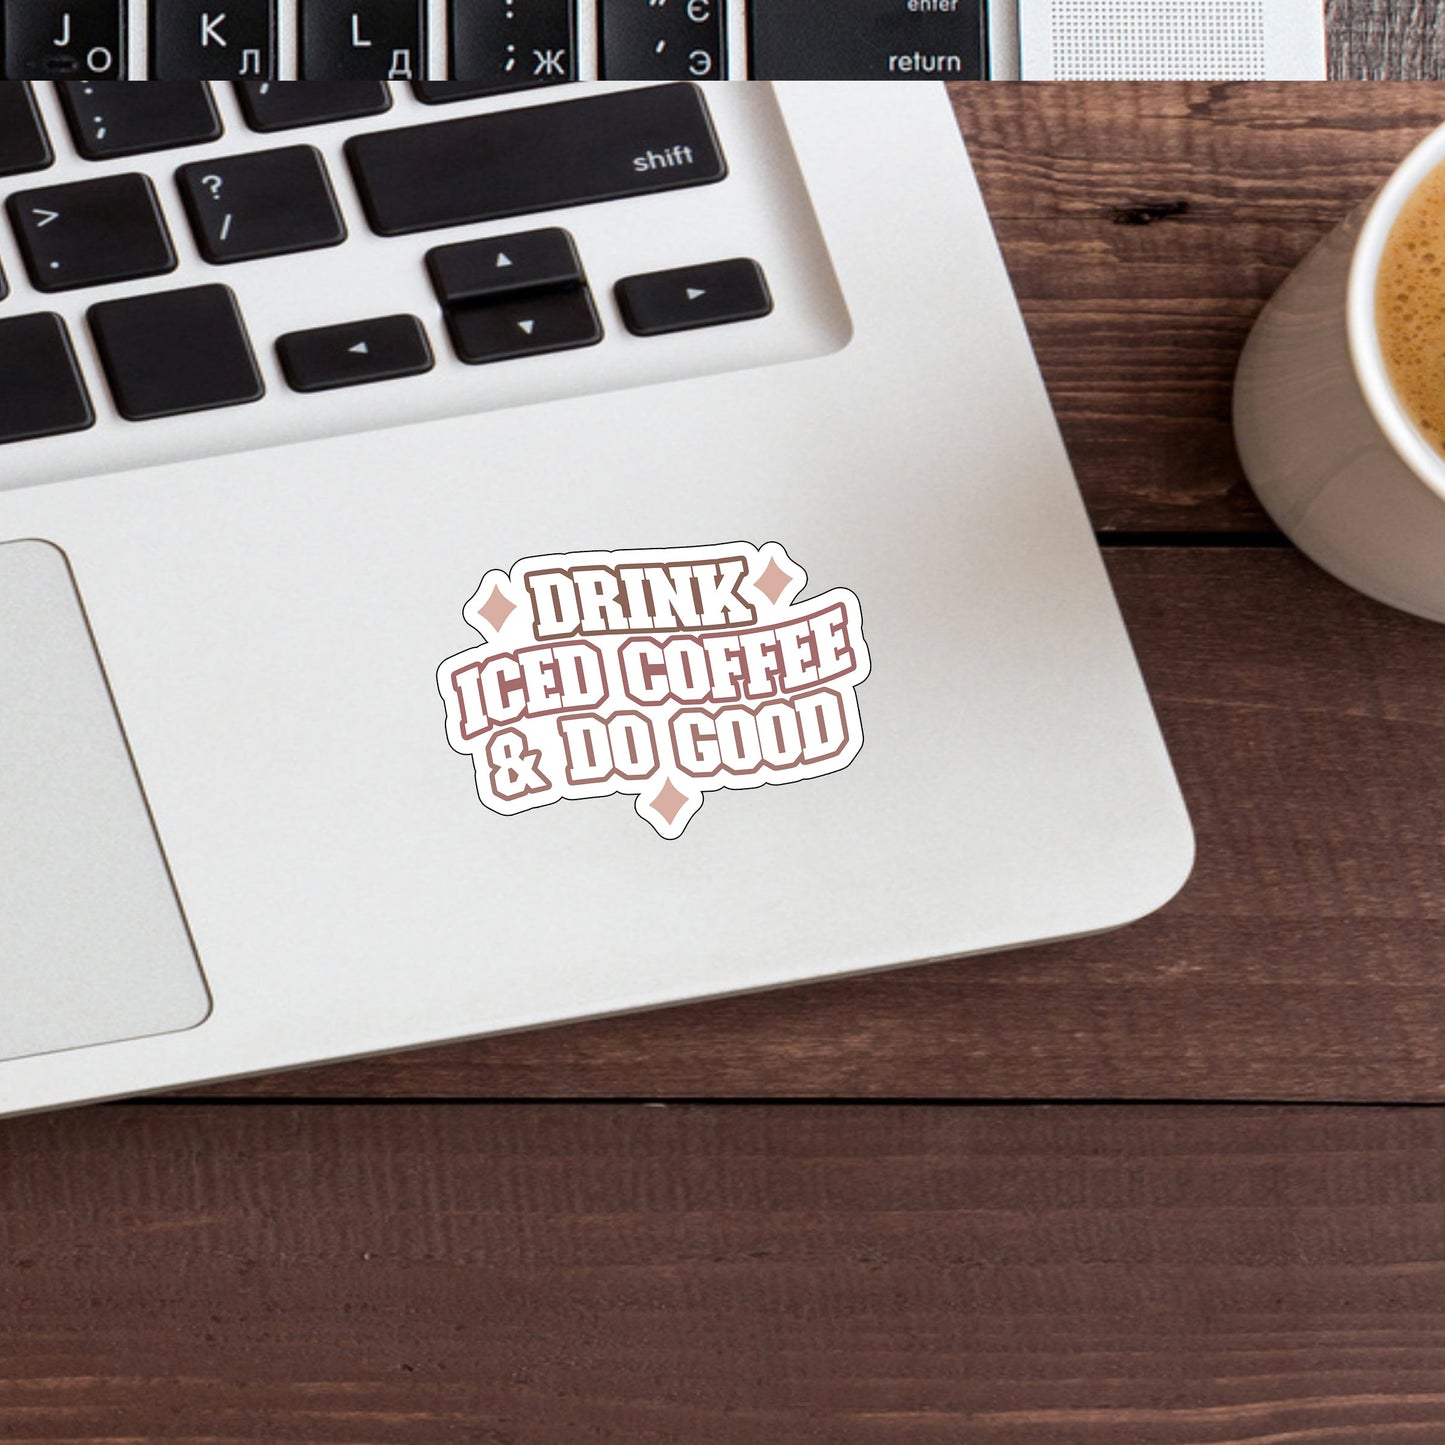 Drink iced coffee and do good  Sticker,  Vinyl sticker, laptop sticker, Tablet sticker